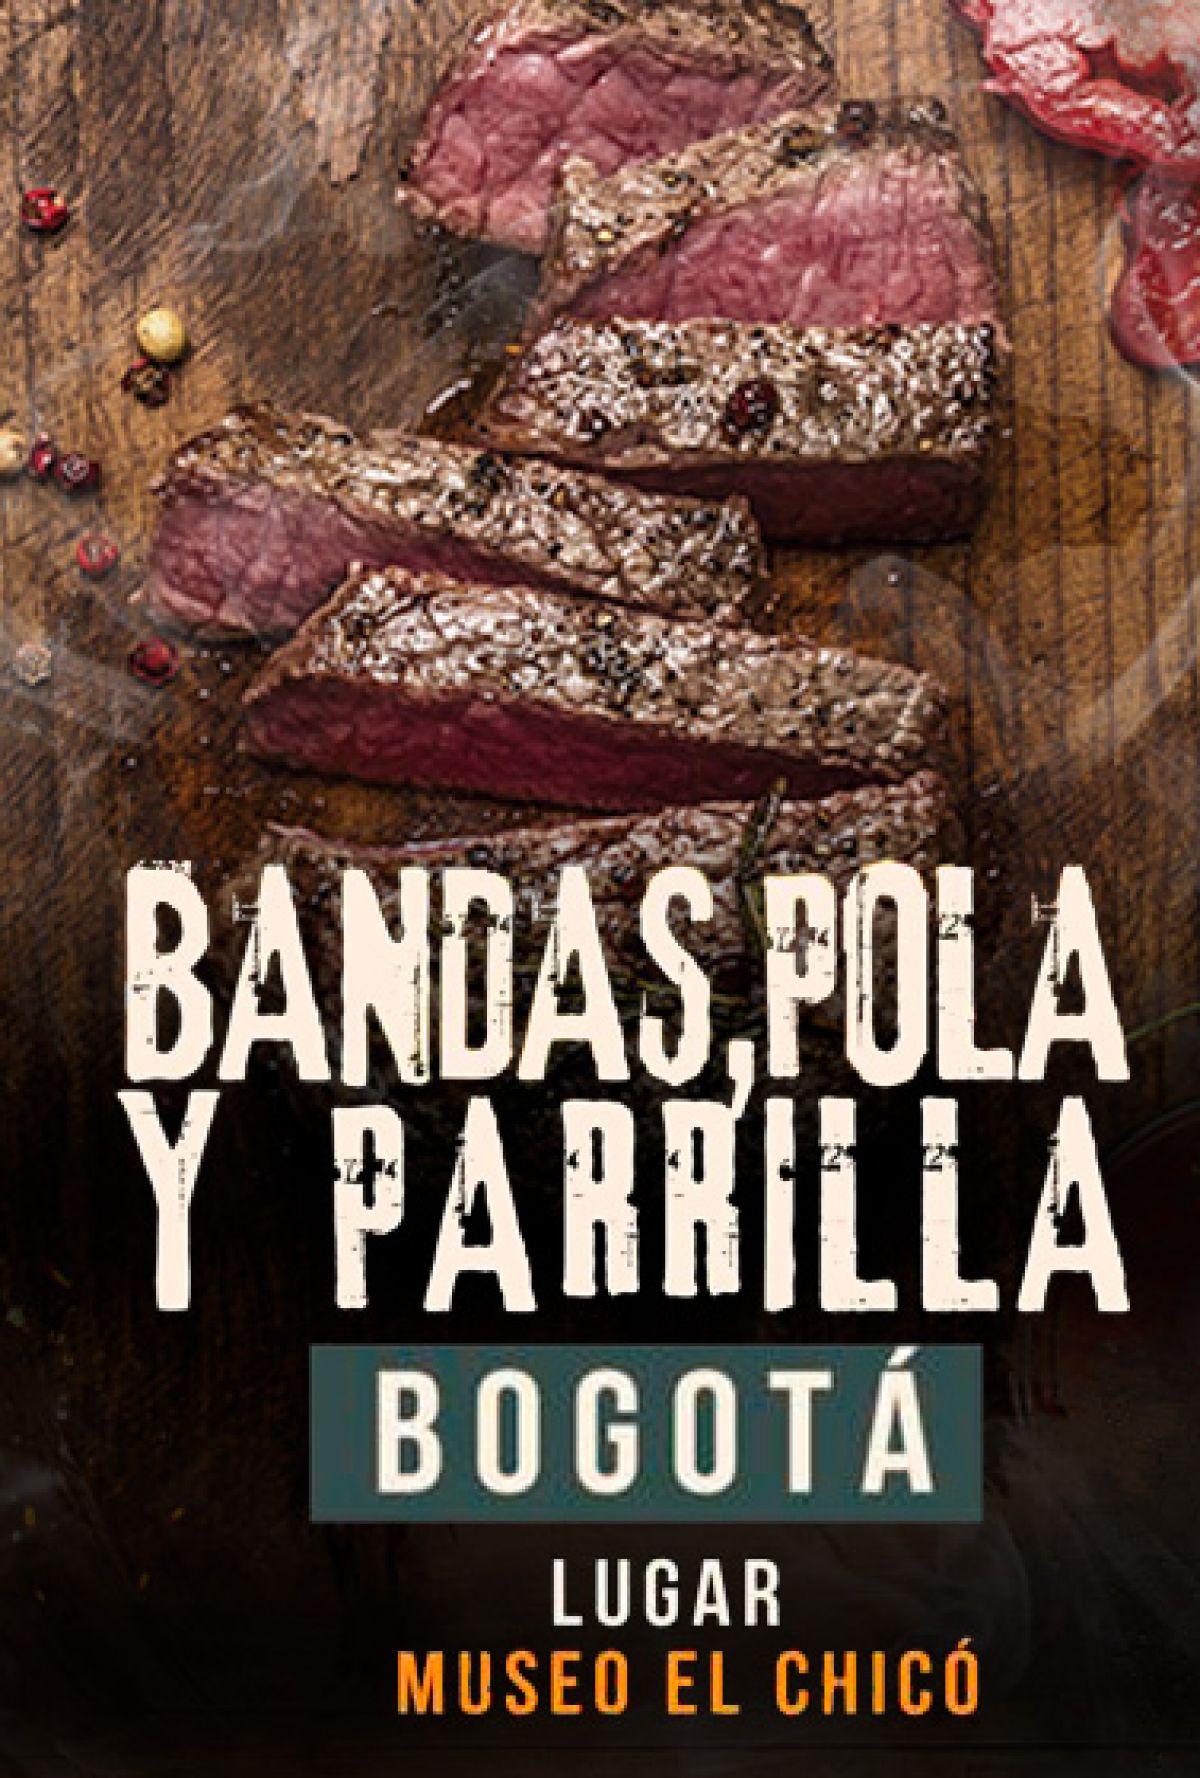 Bandas, Pola y Parrilla Bogotá